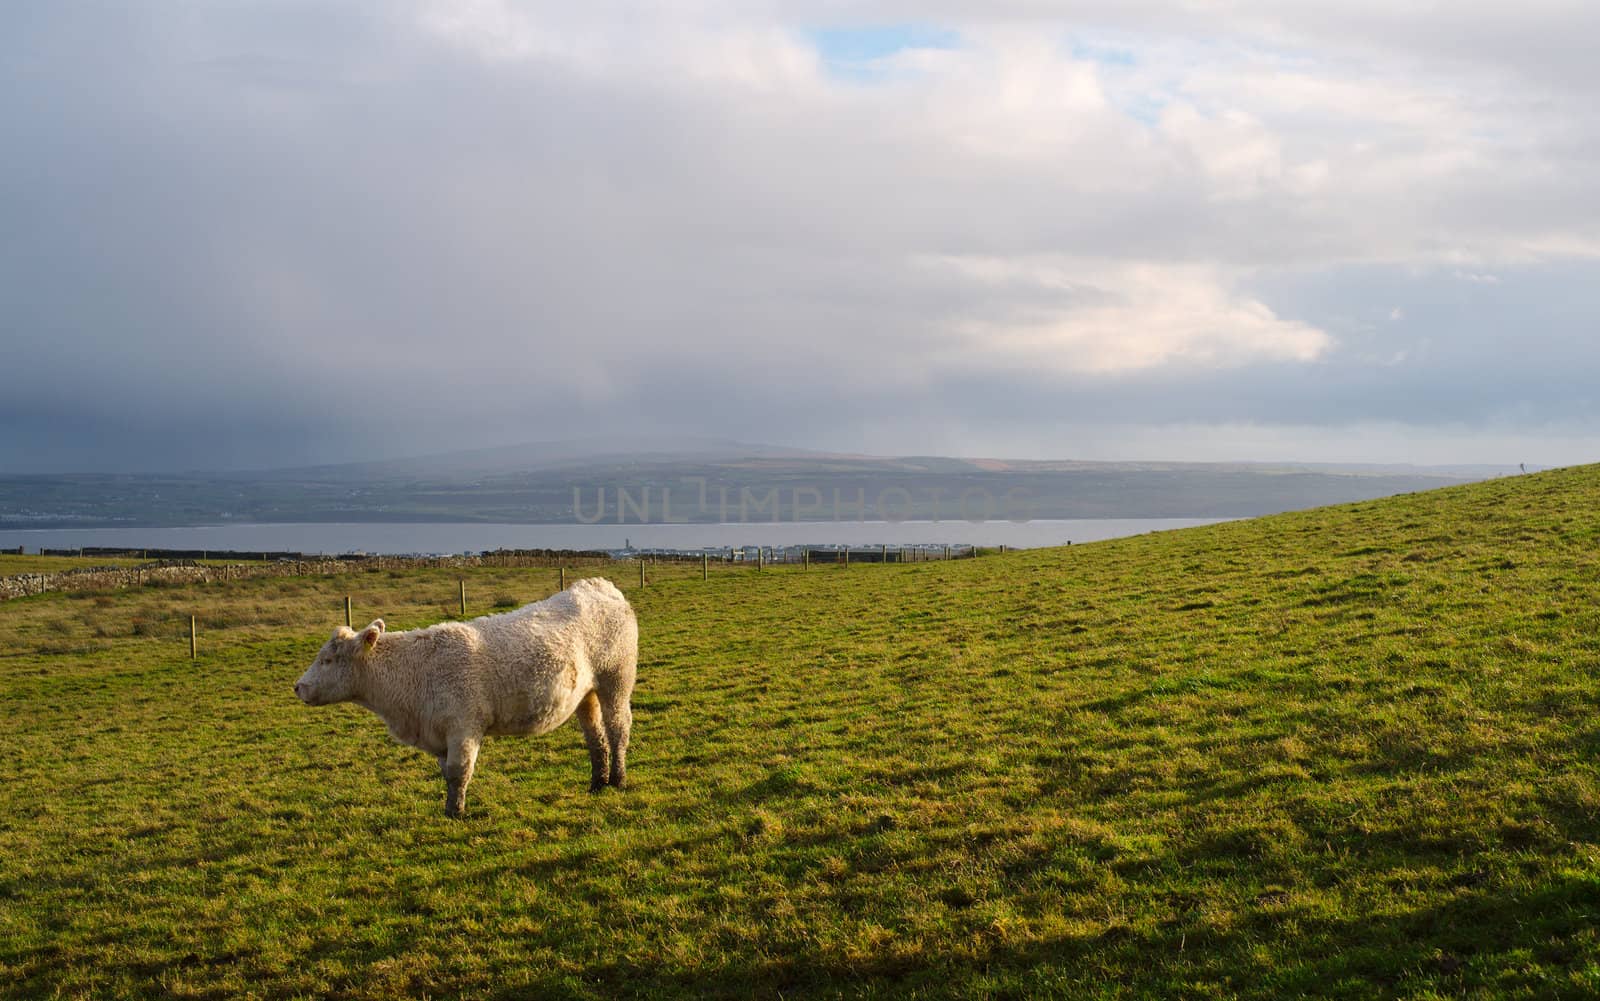 Irish Cow on a field. Ireland.